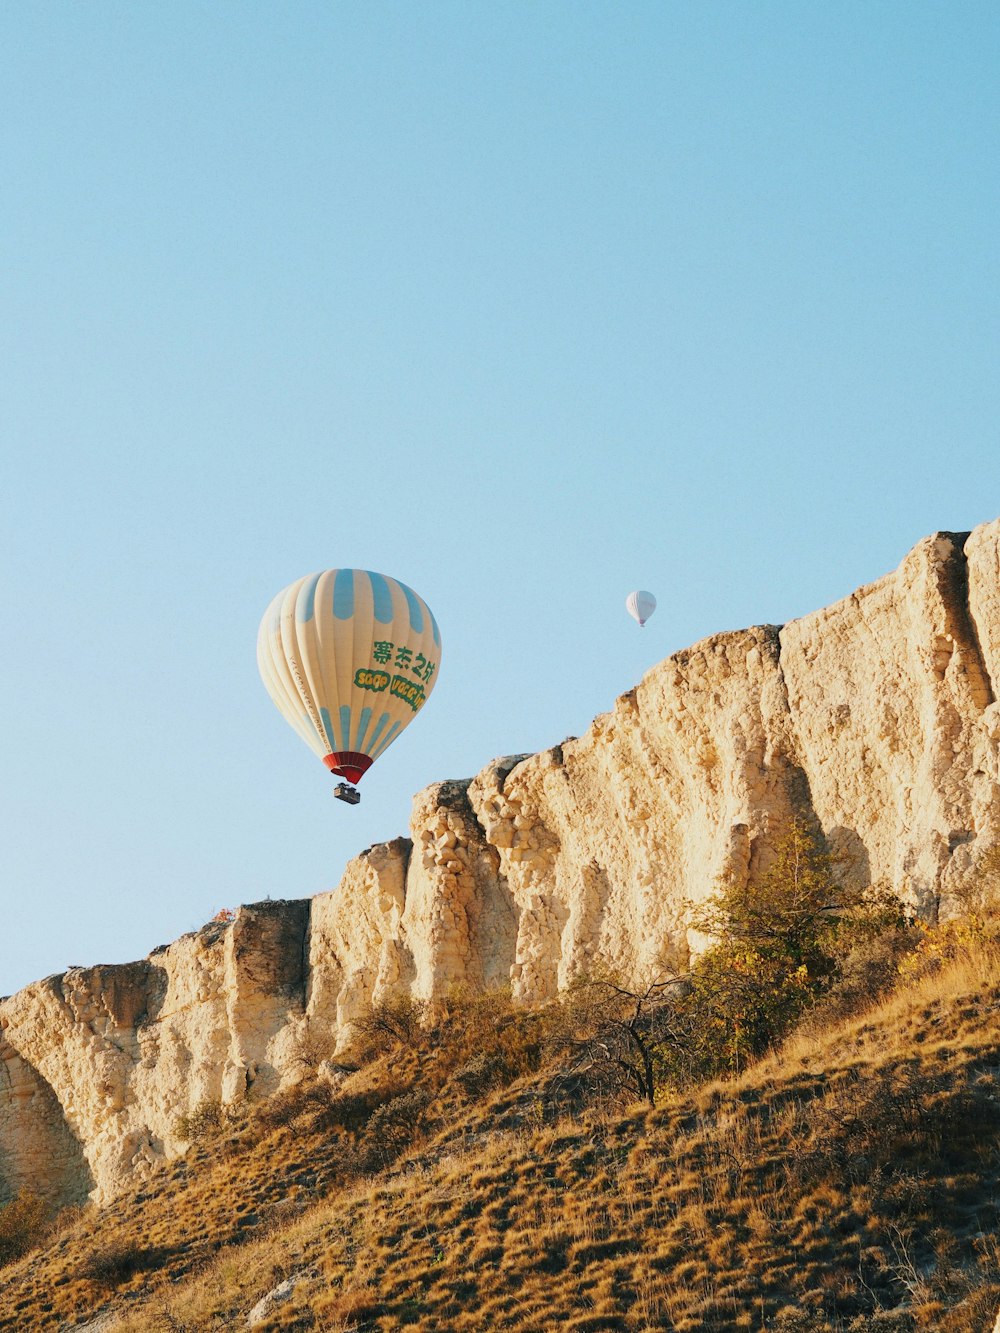 Dos globos aerostáticos volando sobre una ladera rocosa